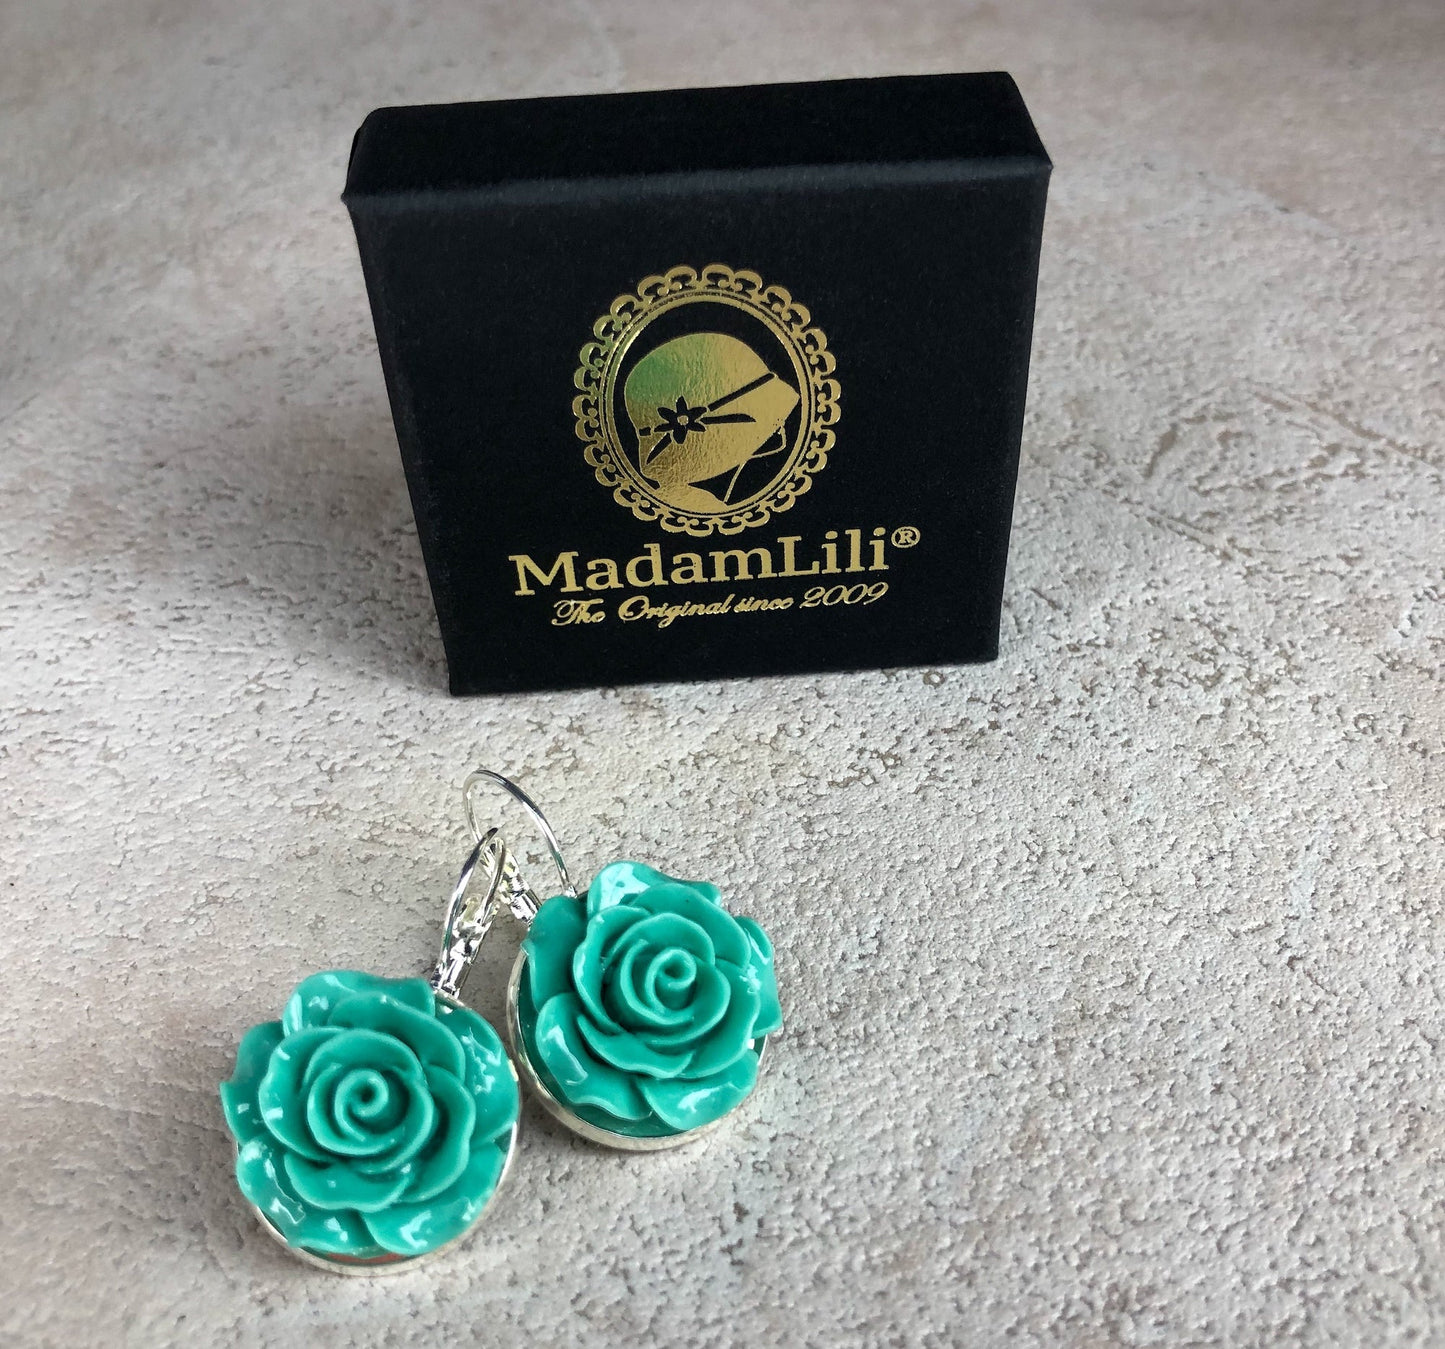 Spring Roses II earrings in vintage style - vinohr-85